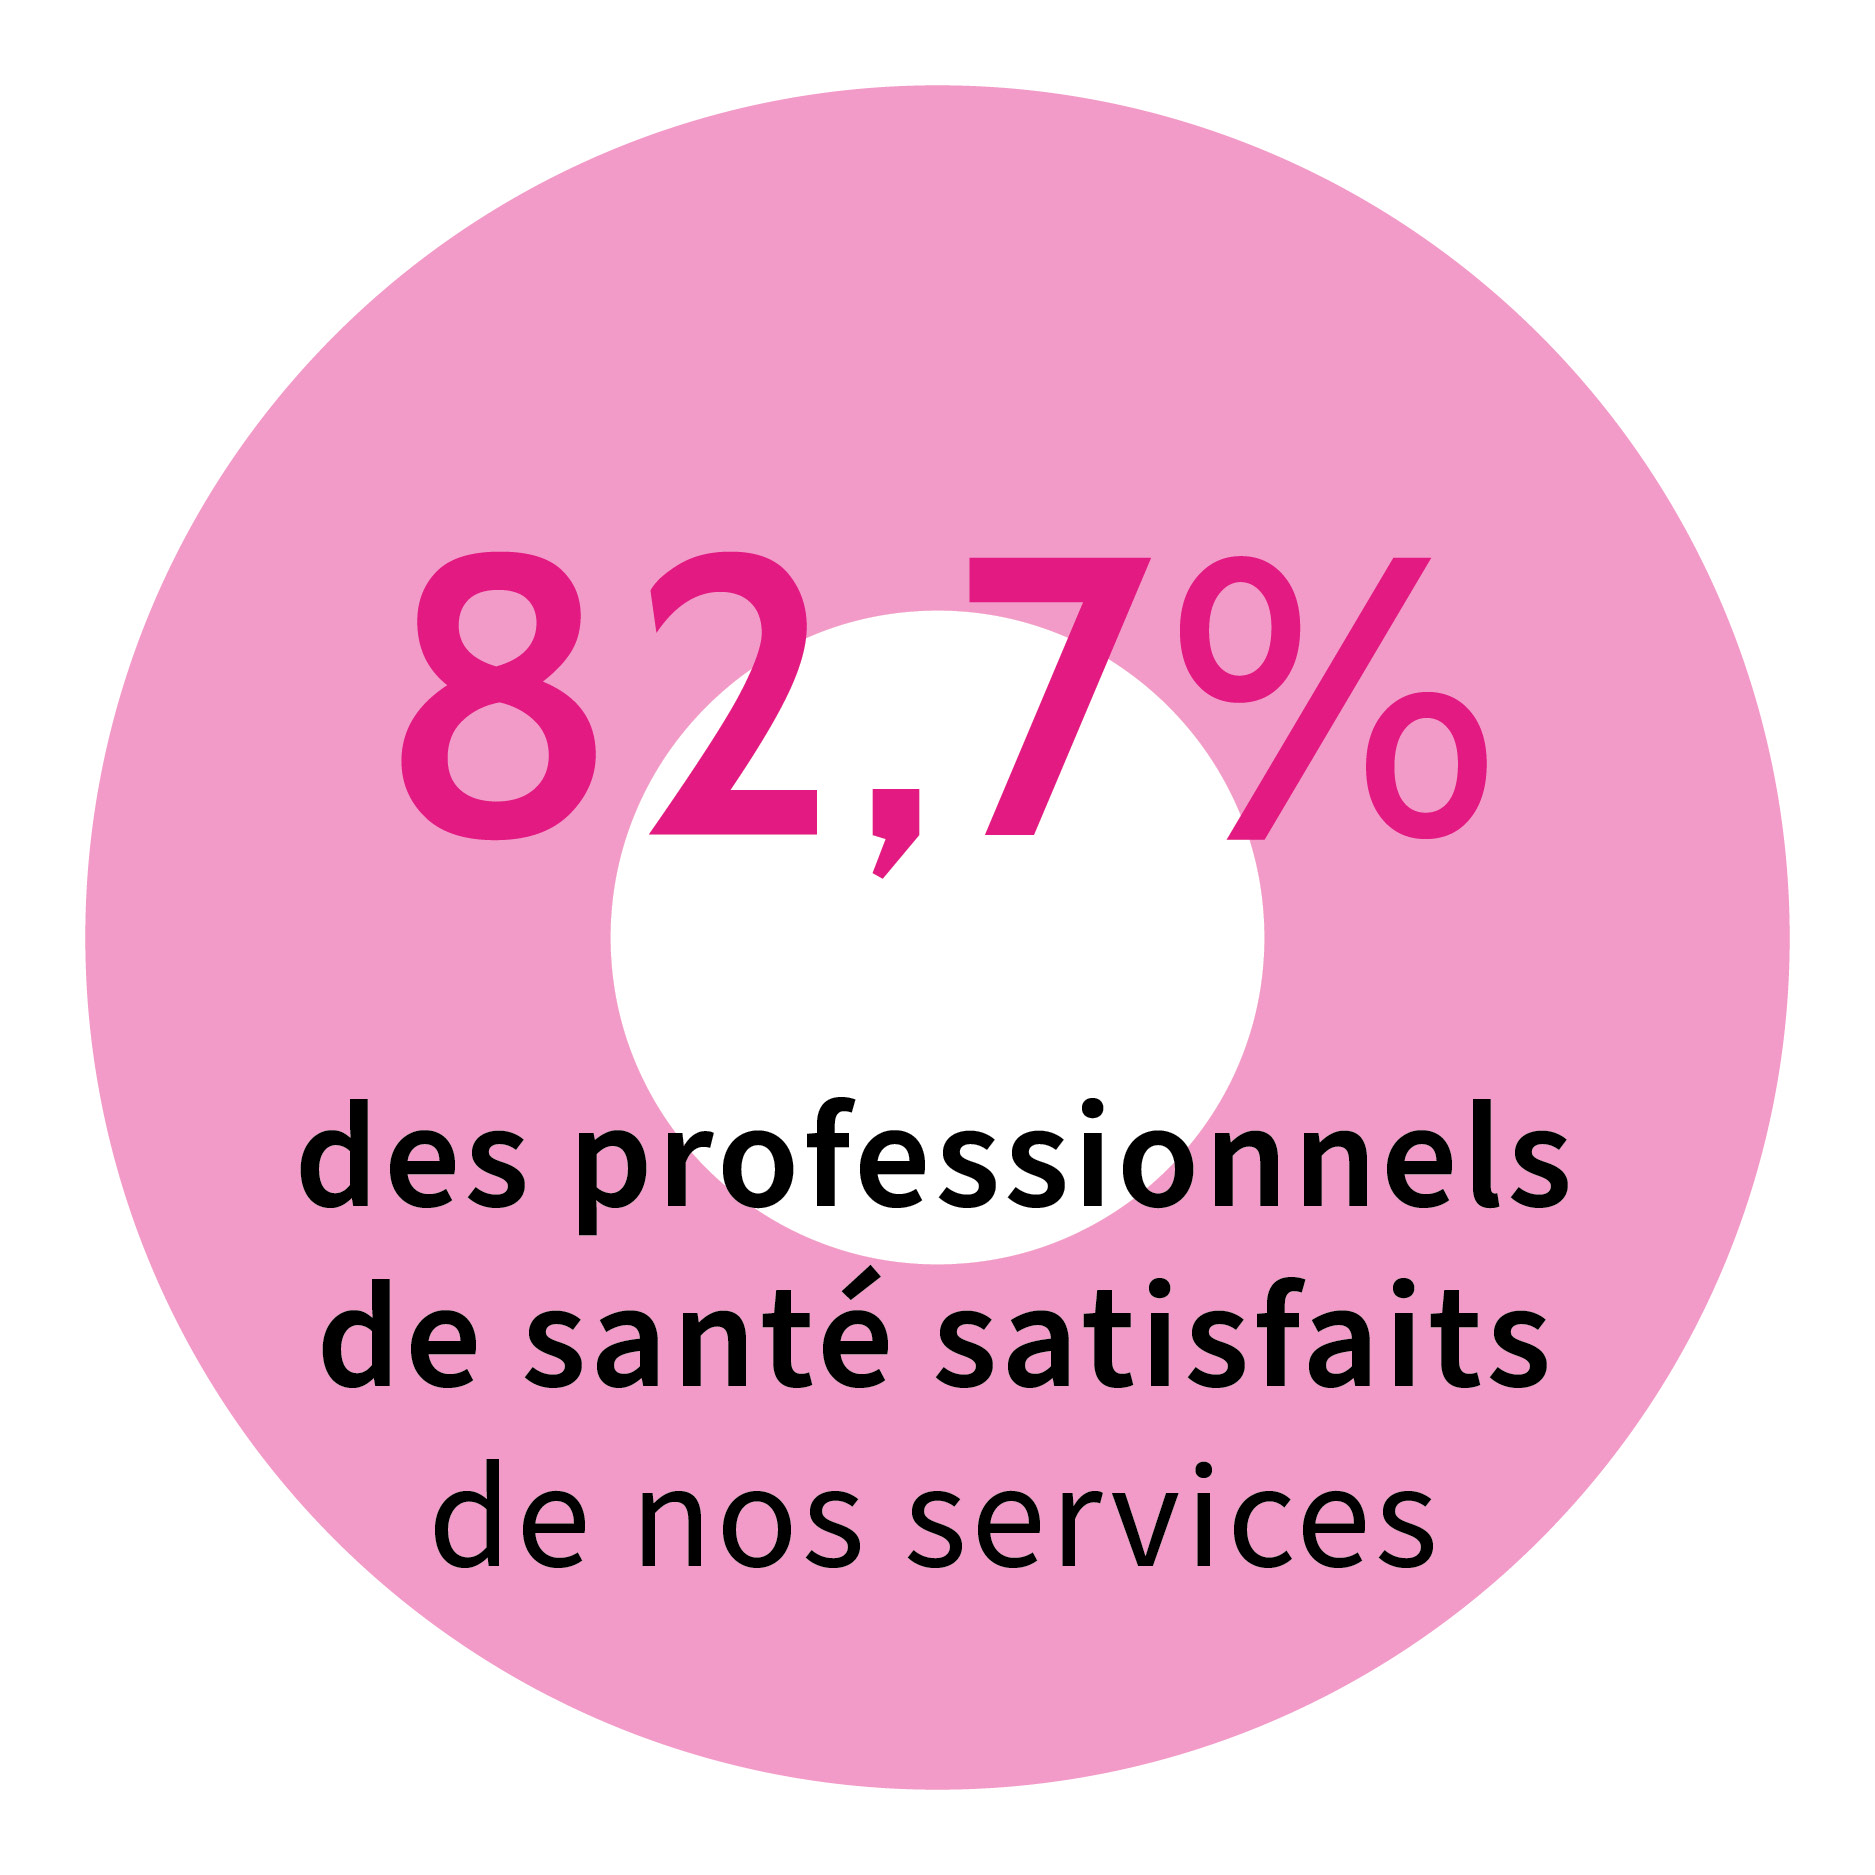 82,7% des professionnels de santés satisfaits de nos services